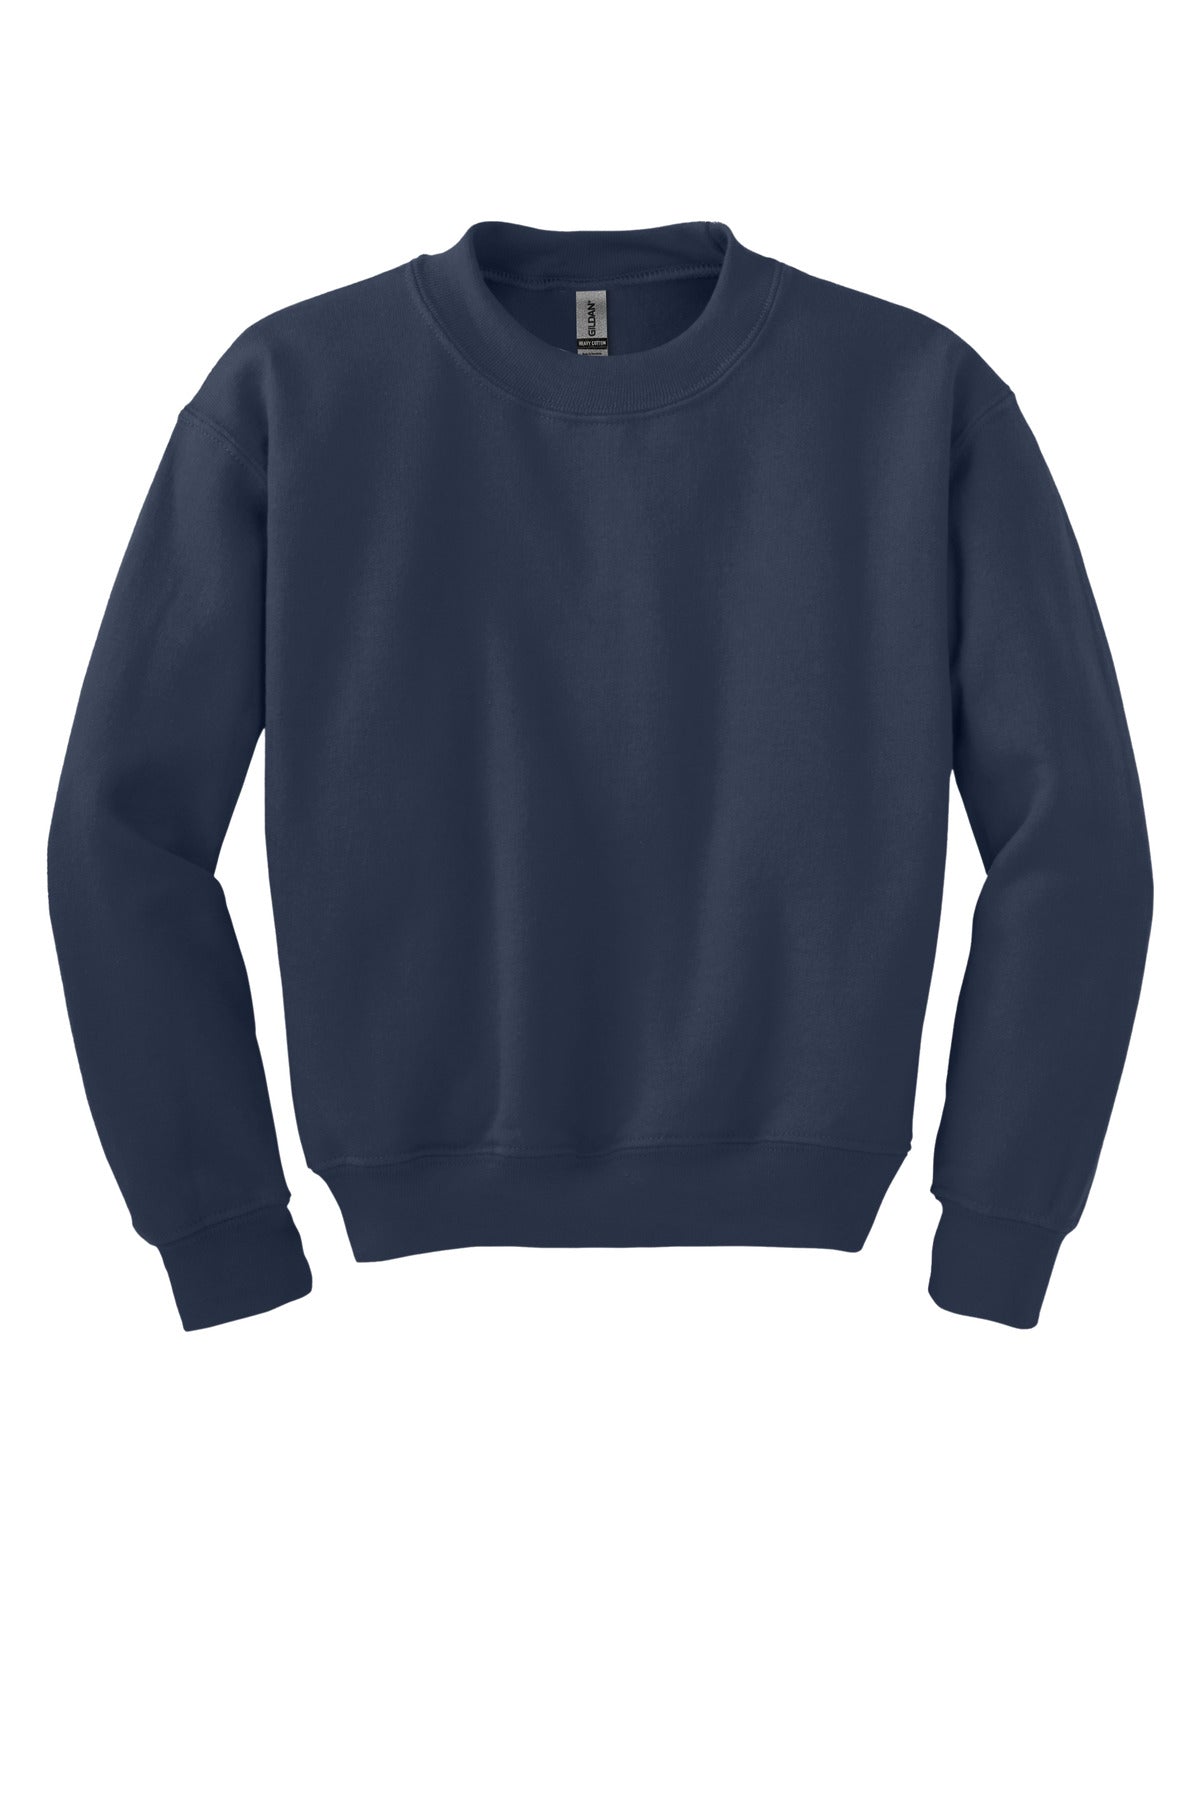 Gildan® - Youth Heavy Blend™ Crewneck Sweatshirt. 18000B - DFW Impression